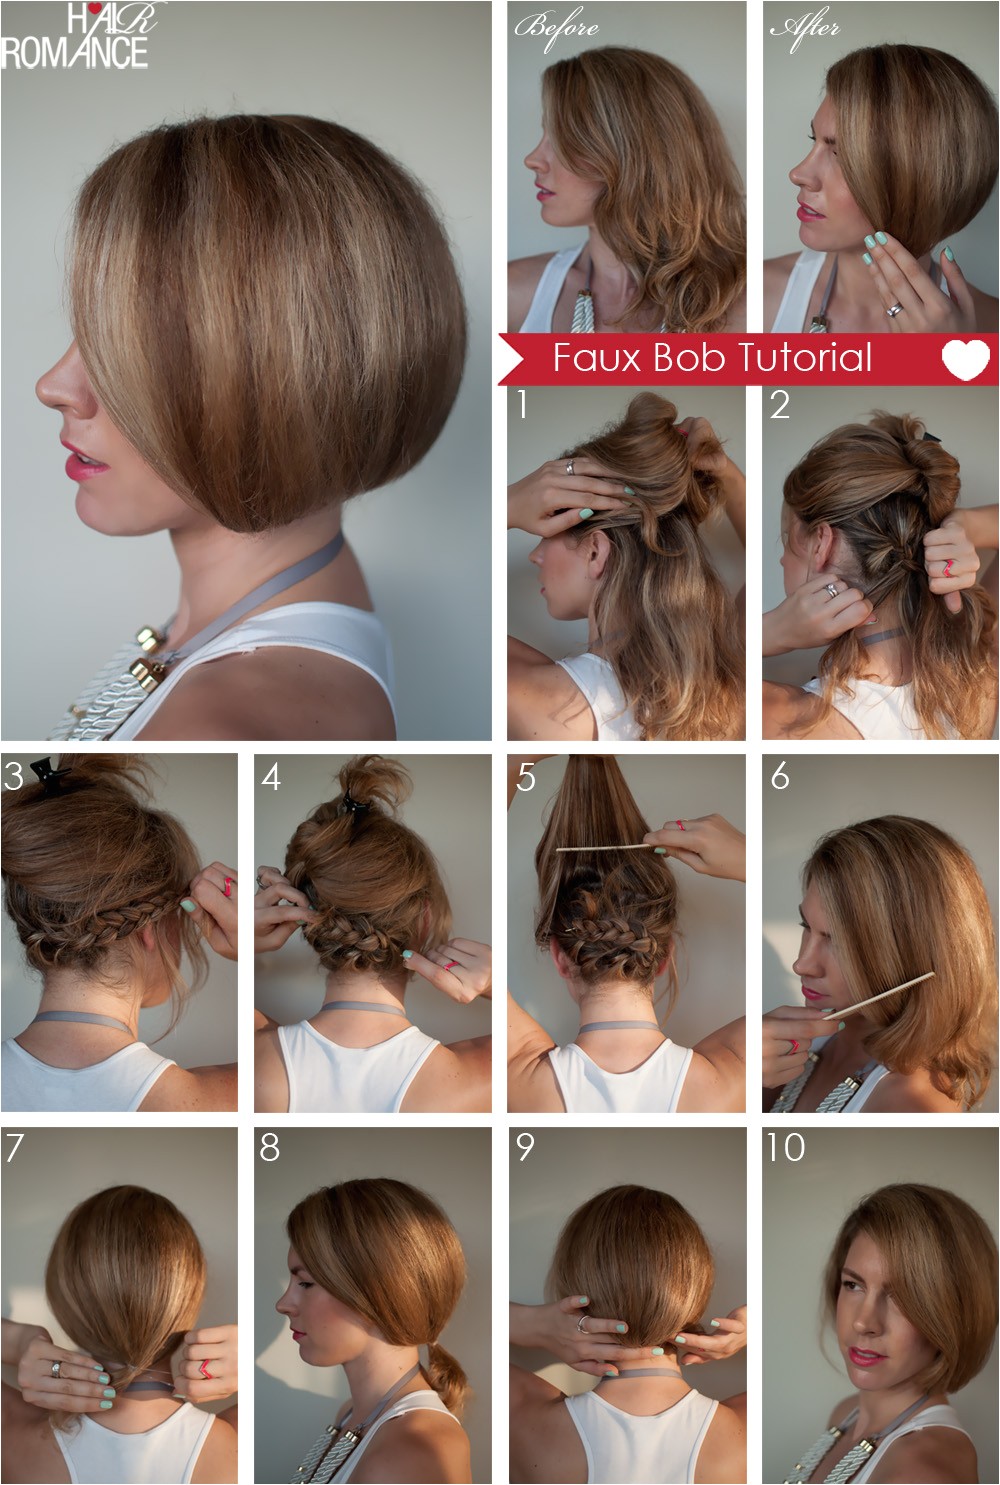 hair tutorial how to create a faux bob